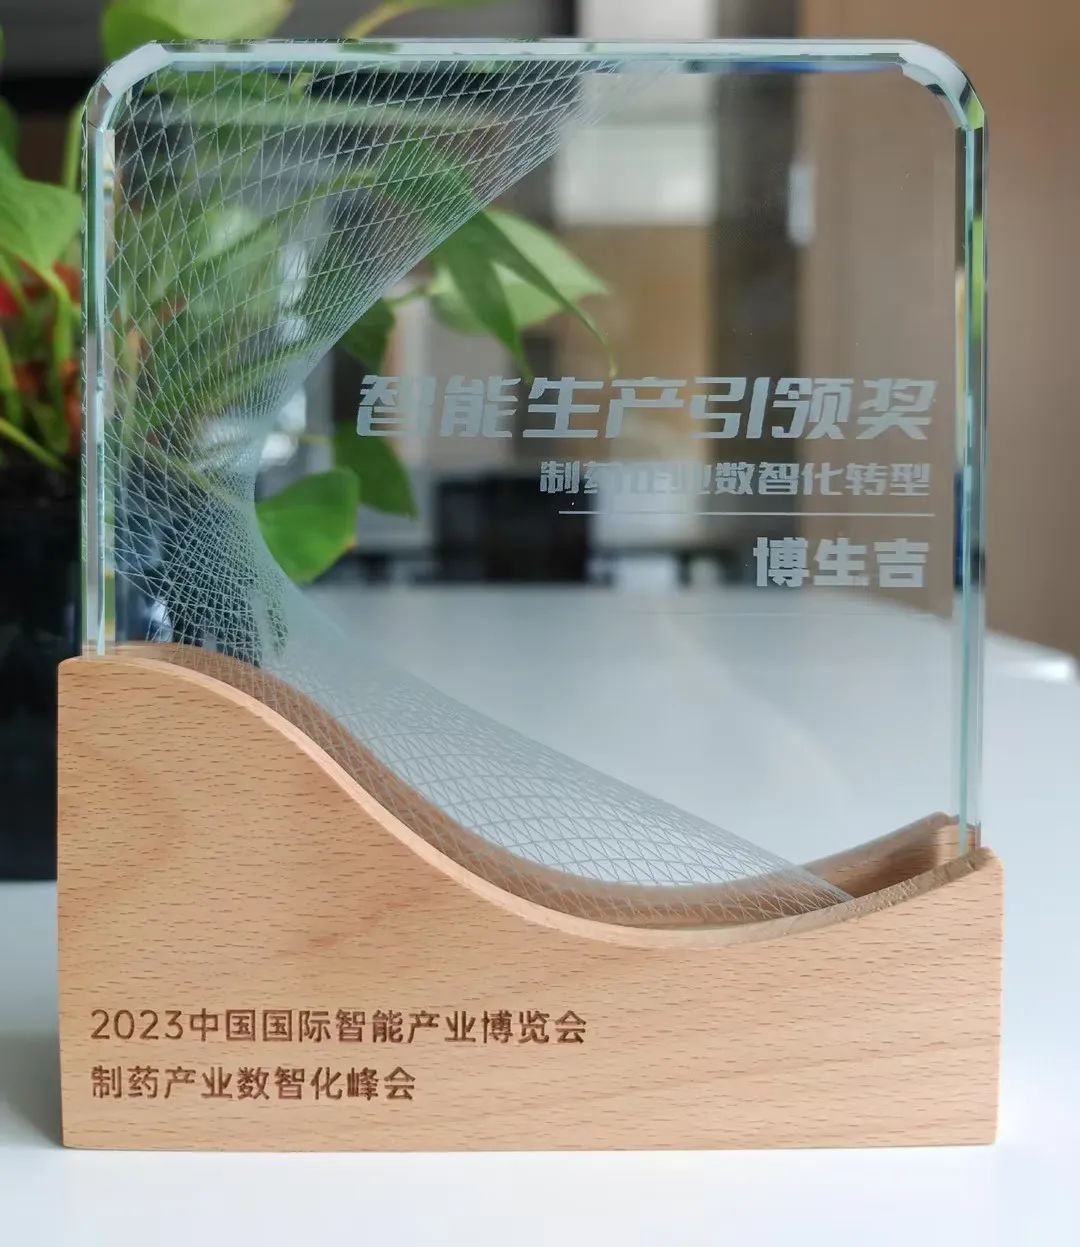 喜讯 | 博生吉荣获 PHDI “智能生产引领奖”